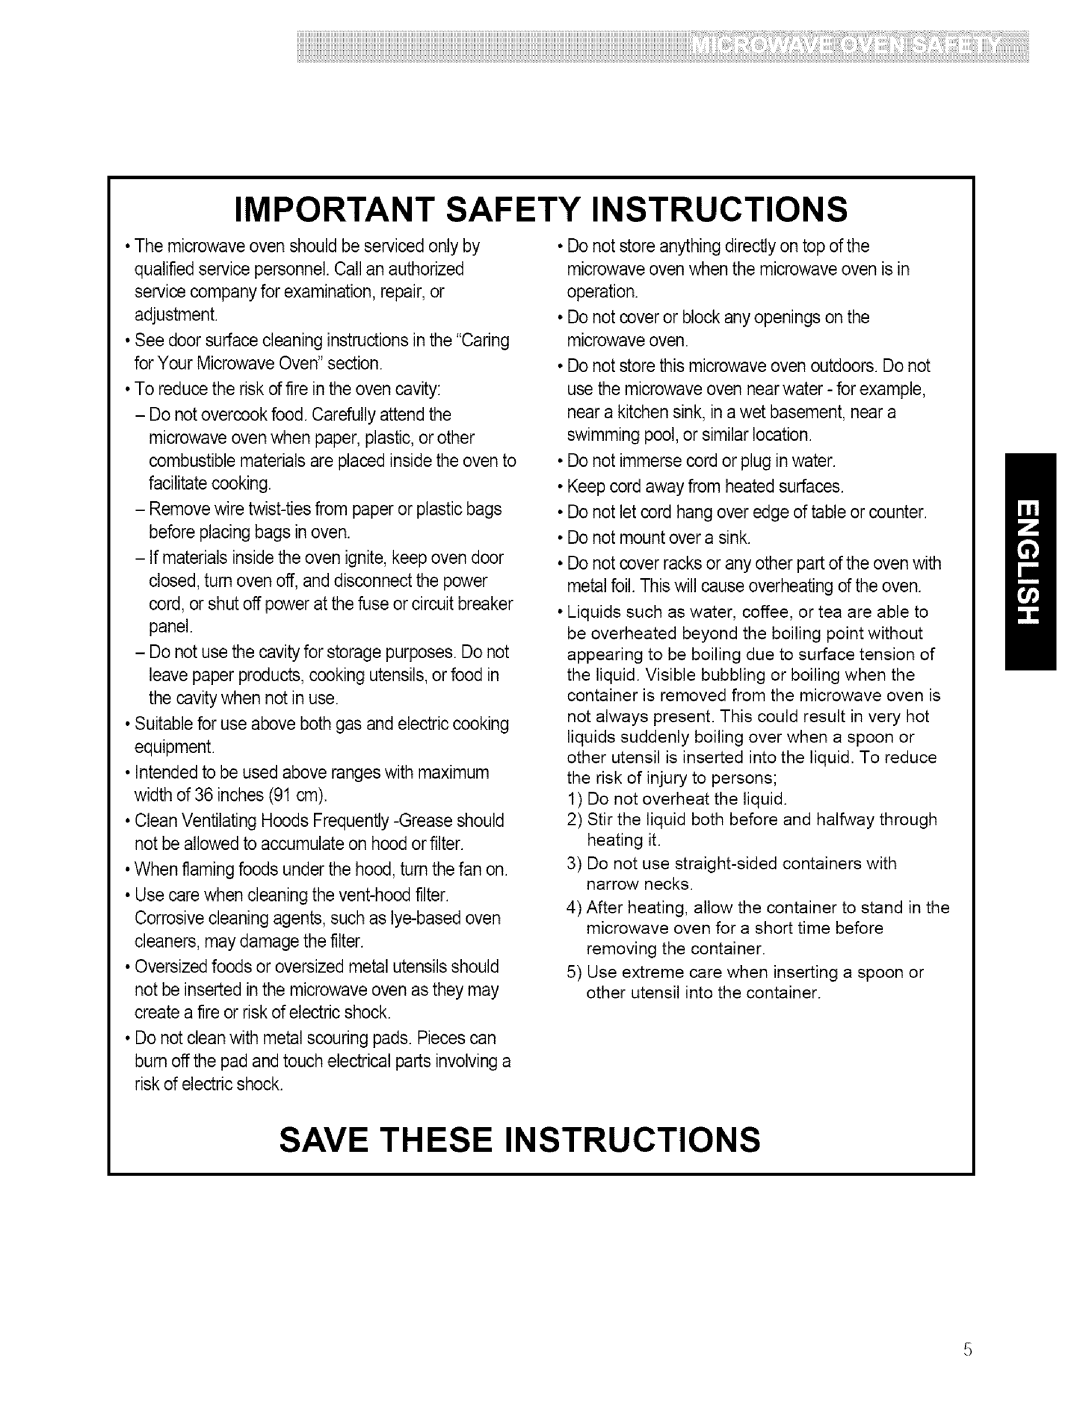 Kenmore 721.80413, 721.80599, 721.80594, 721.80593 manual Important Safety Instructions, i!i!i!!i!i, Save These Instructions 